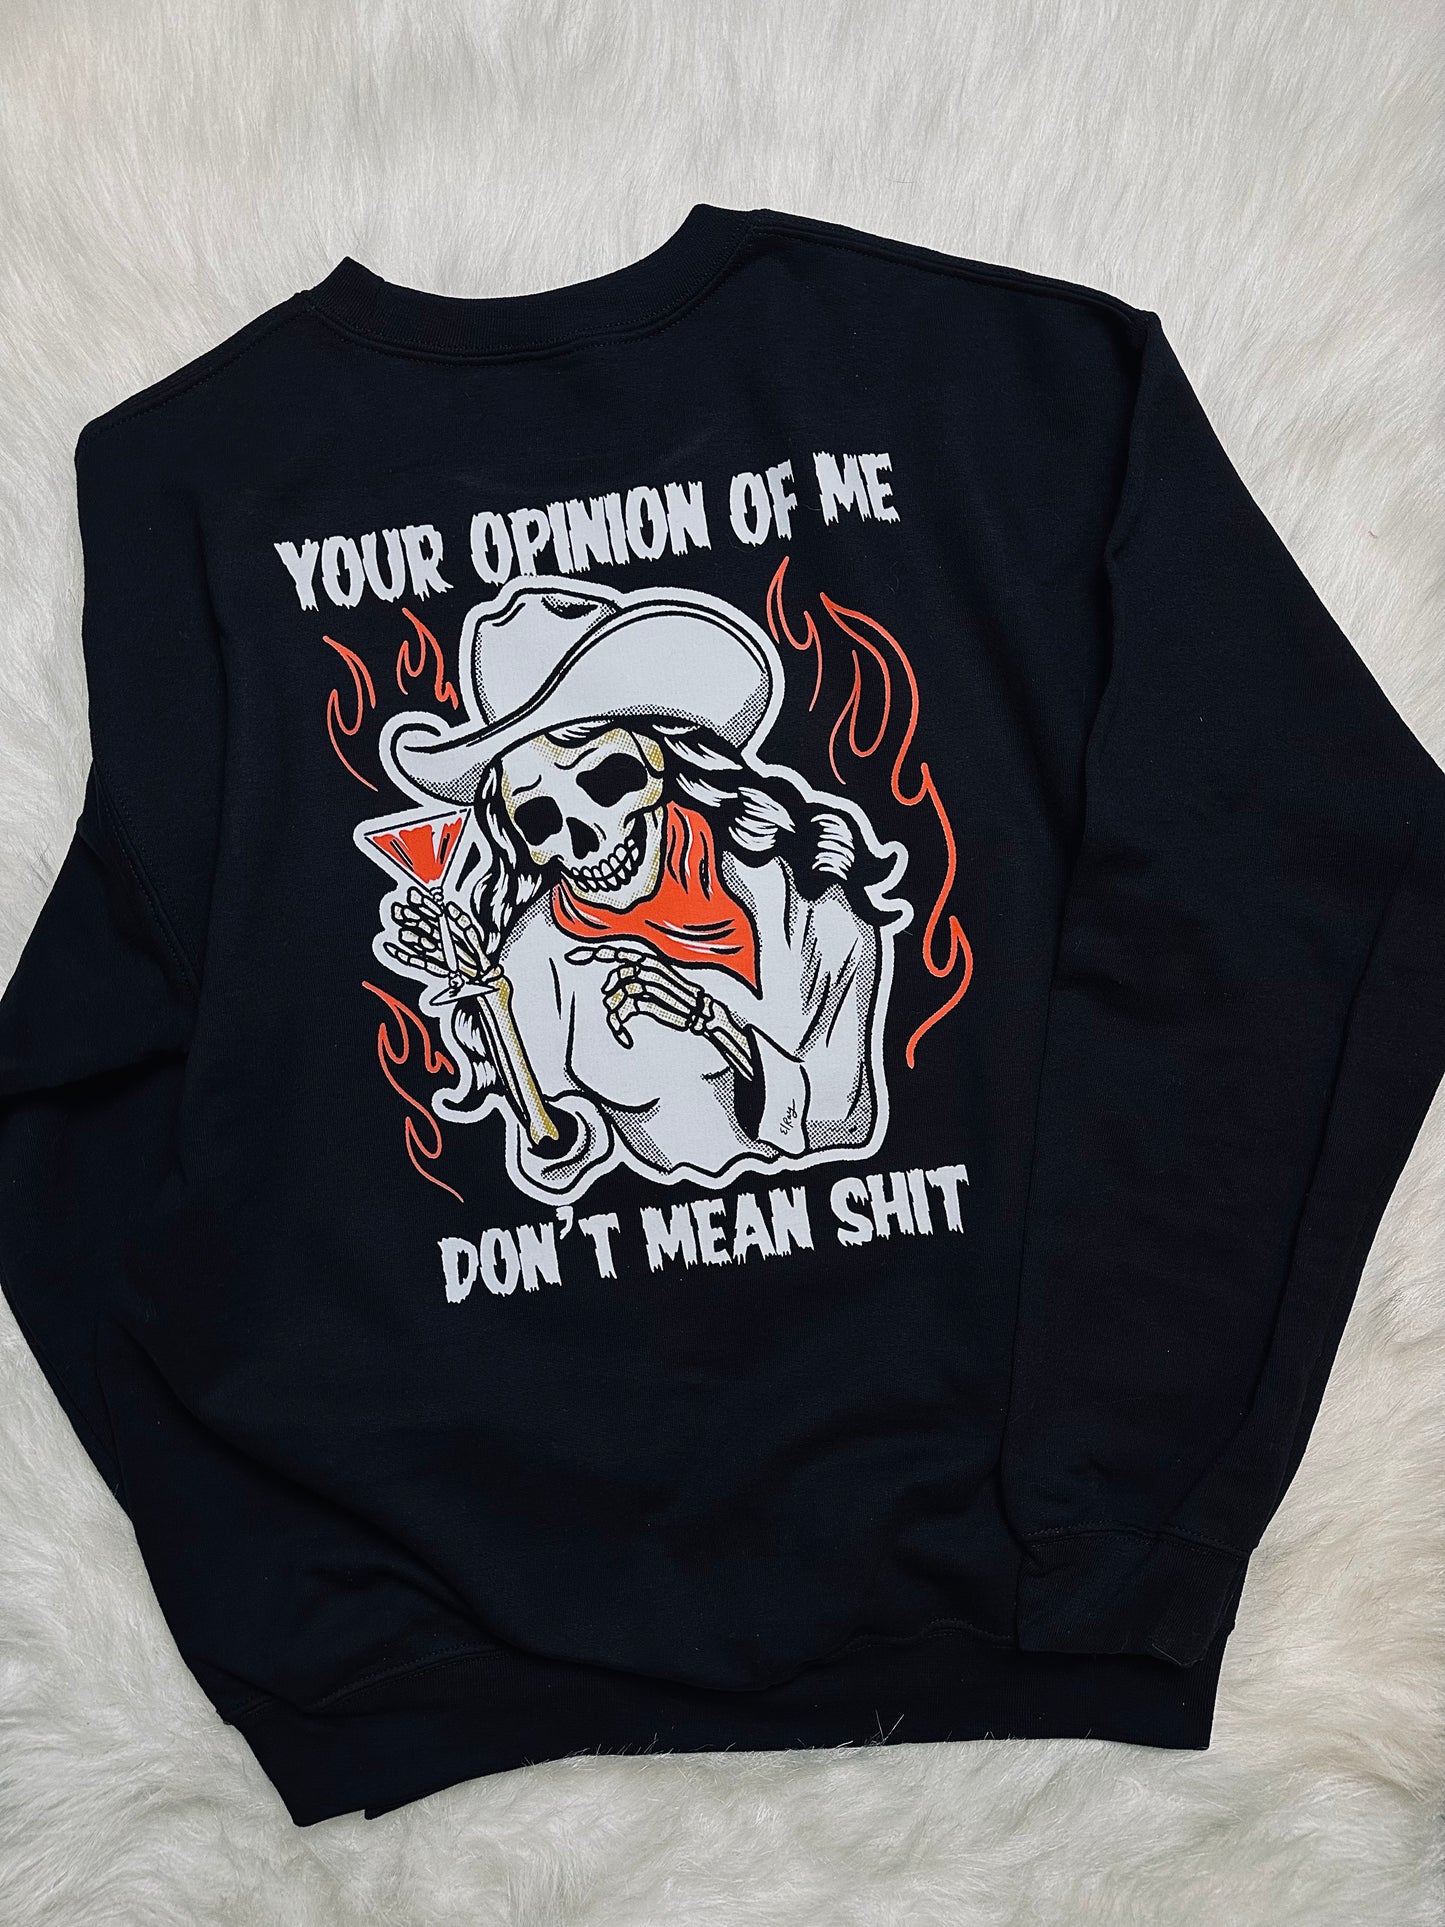 Your opinion of me sweatshirt